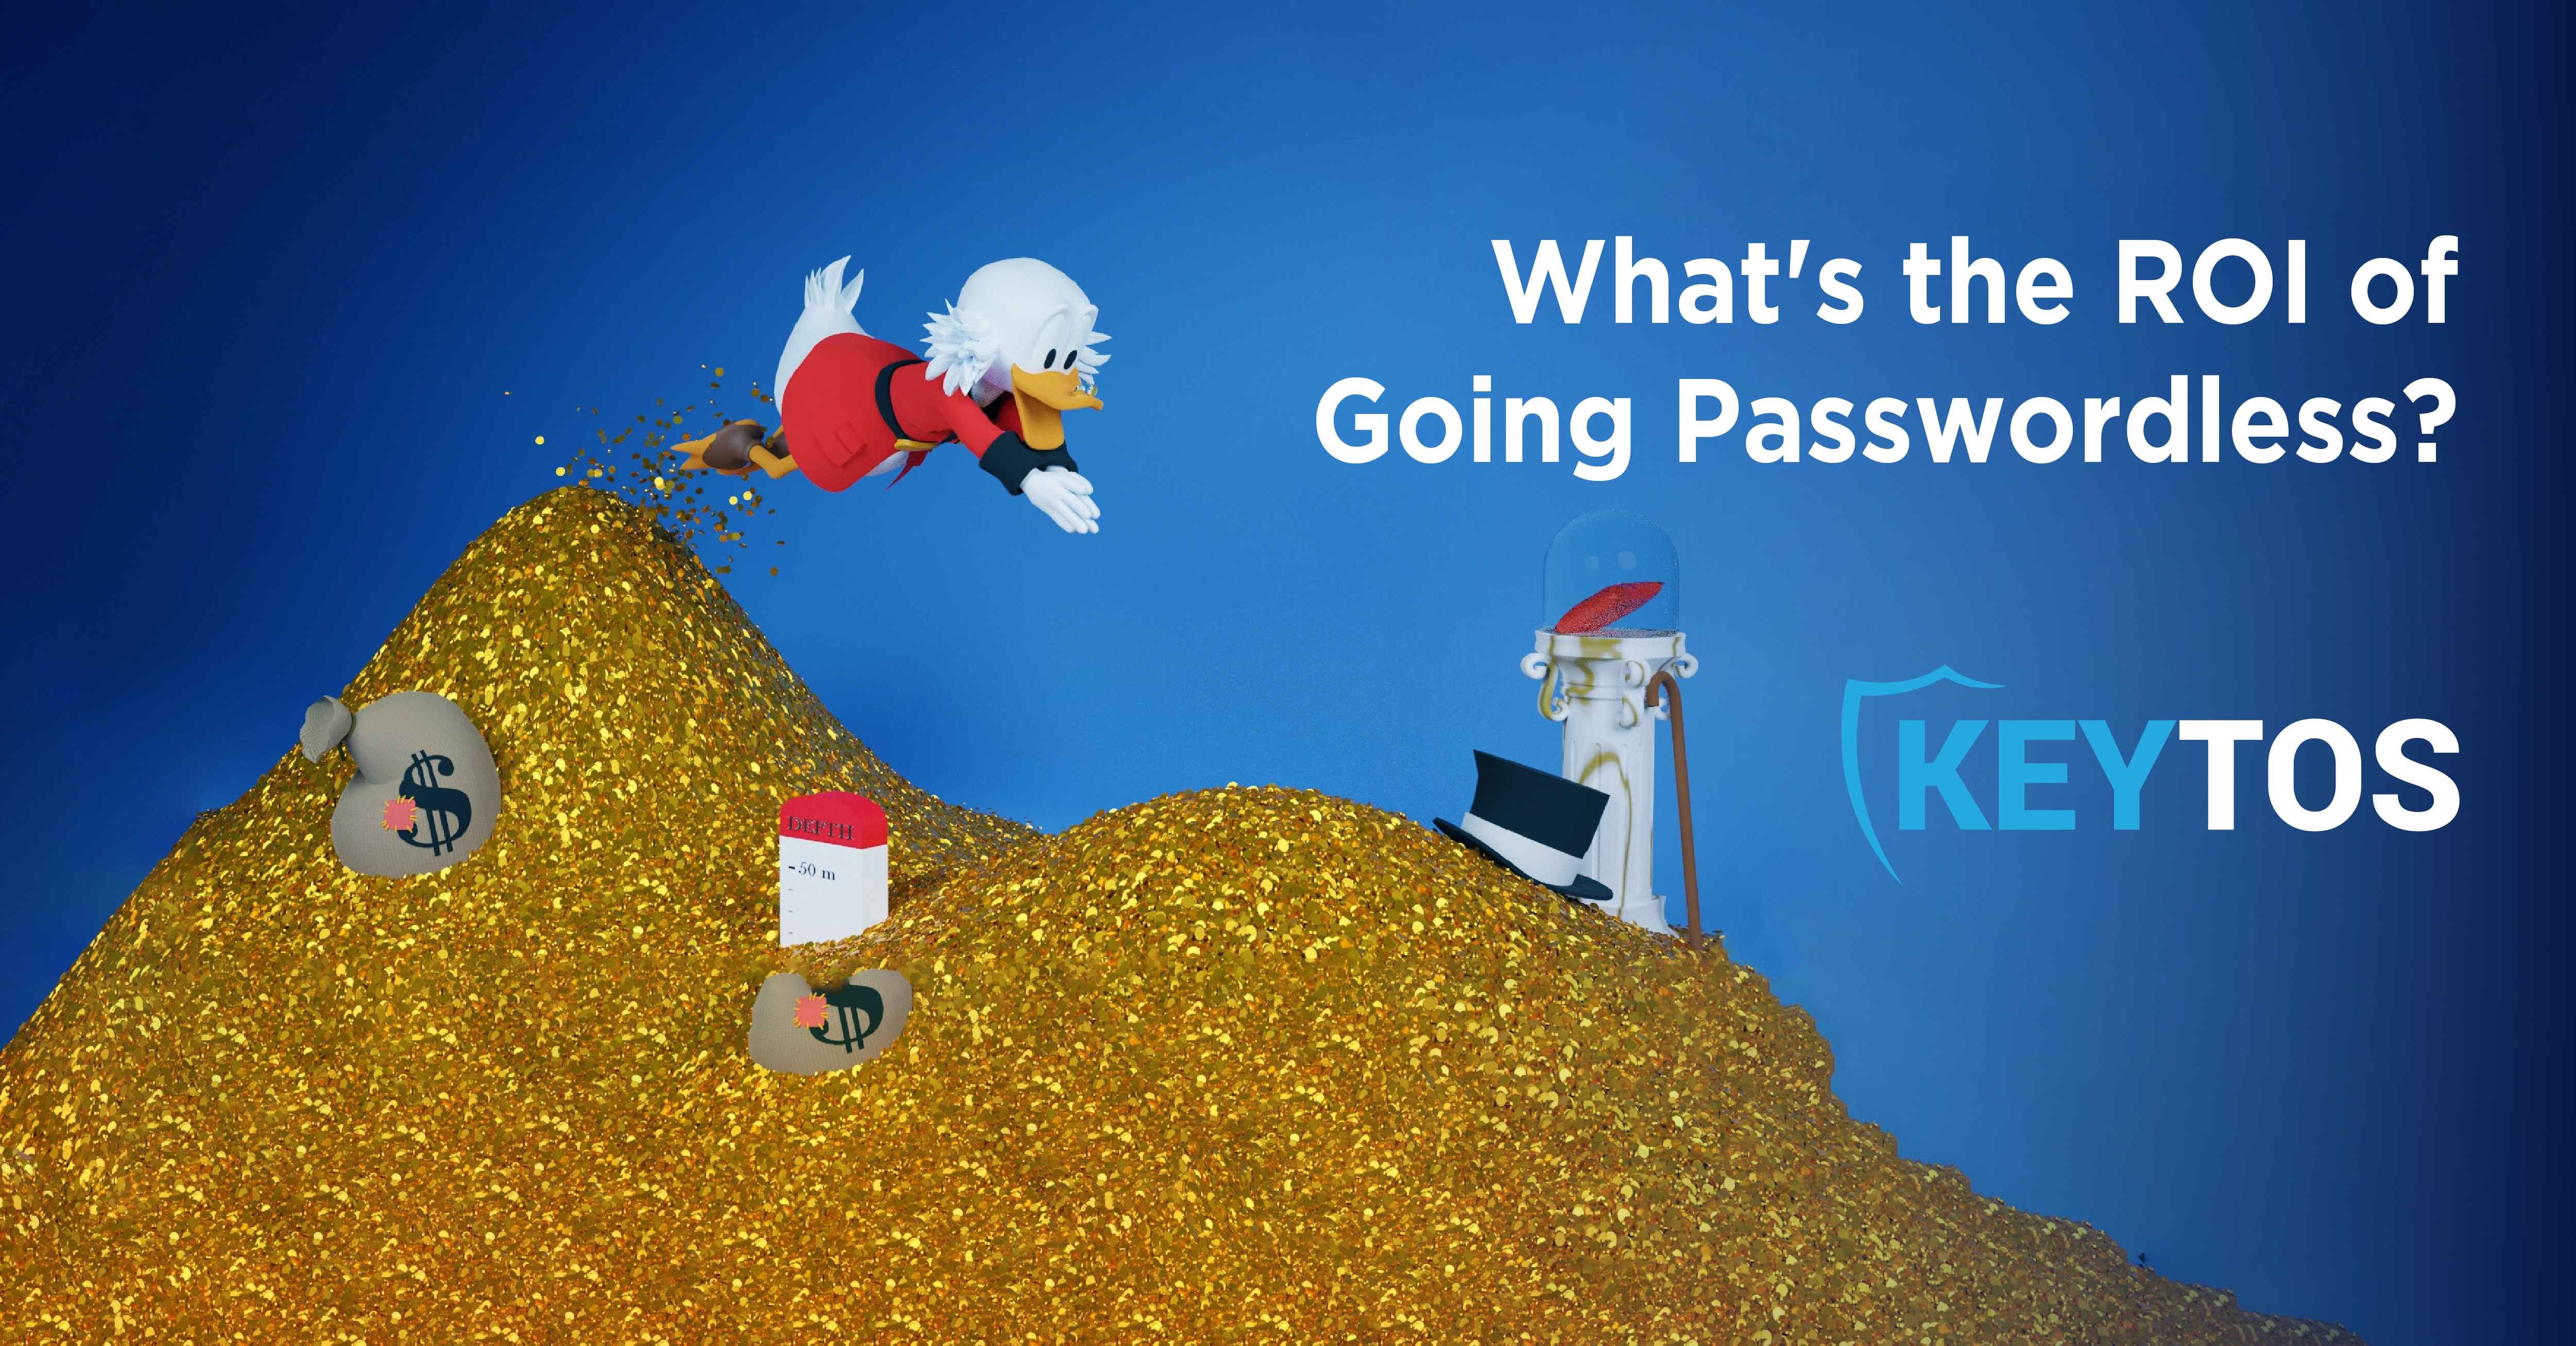 The ROI of Going Passwordless